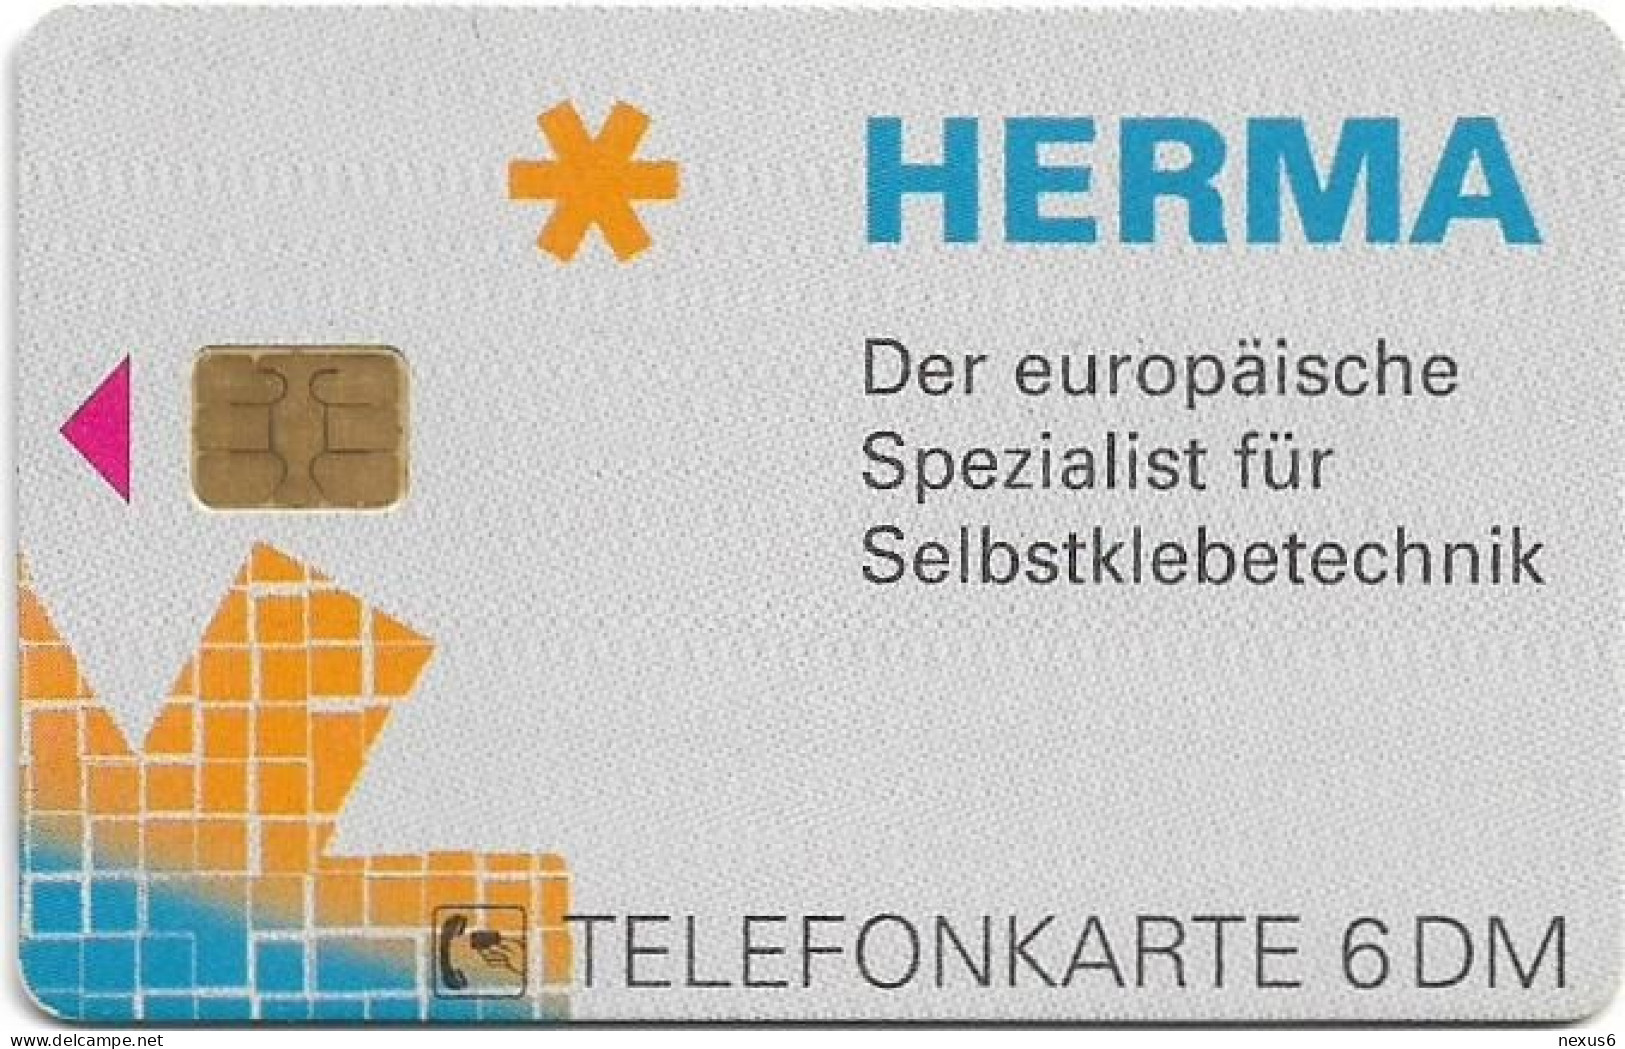 Germany - Herma Papierwaren - O 2449 - 12.1995, 6DM, 6.000ex, Used - O-Series: Kundenserie Vom Sammlerservice Ausgeschlossen